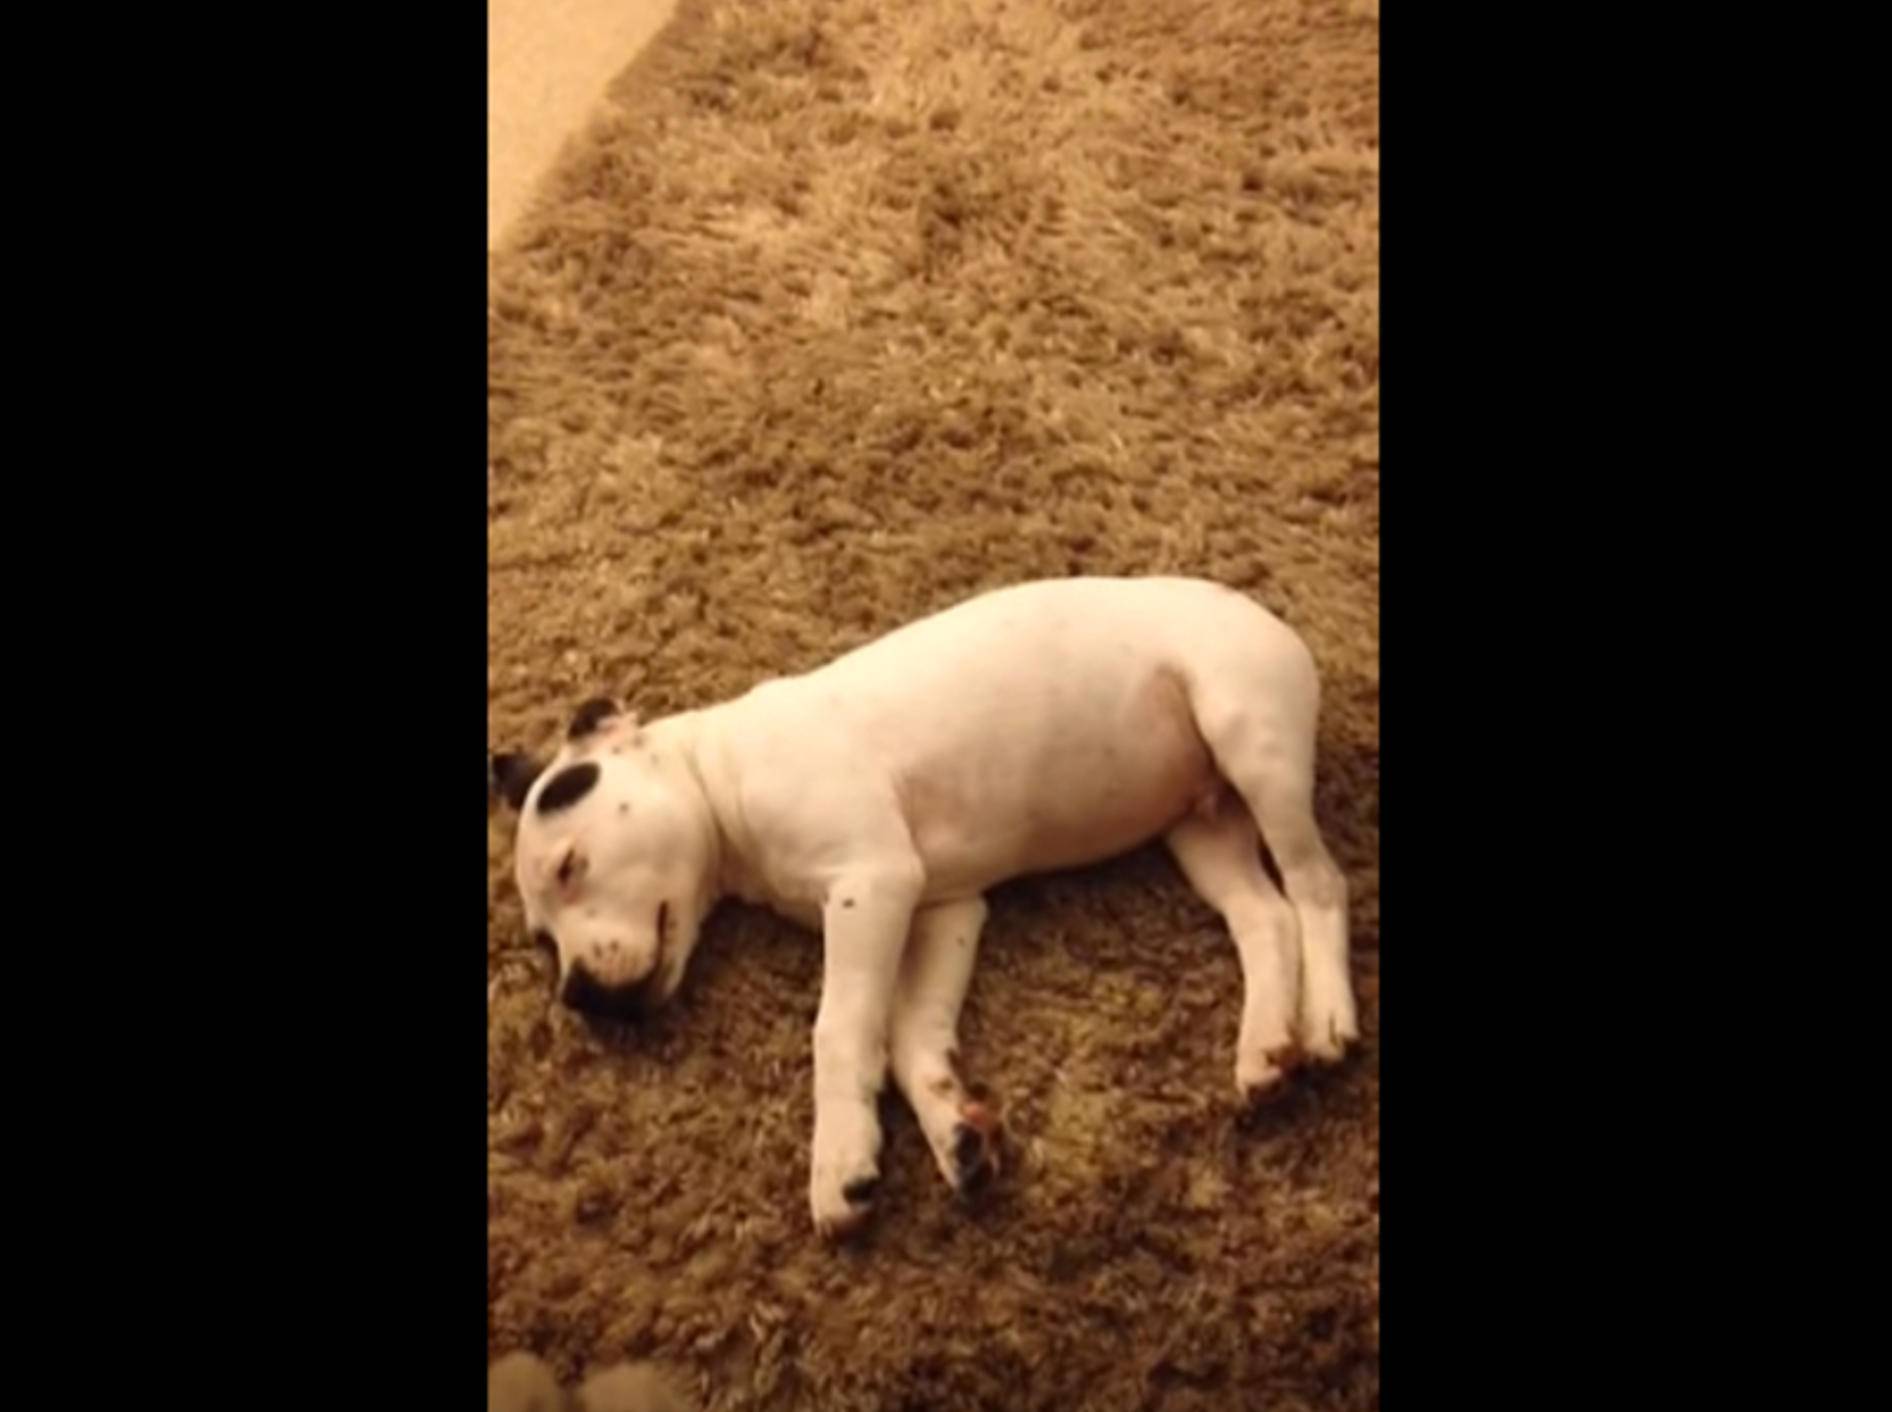 Hund erschrocken: "Uuuups! War das ein Pups?" – Bild: YouTube / jonnymaberley